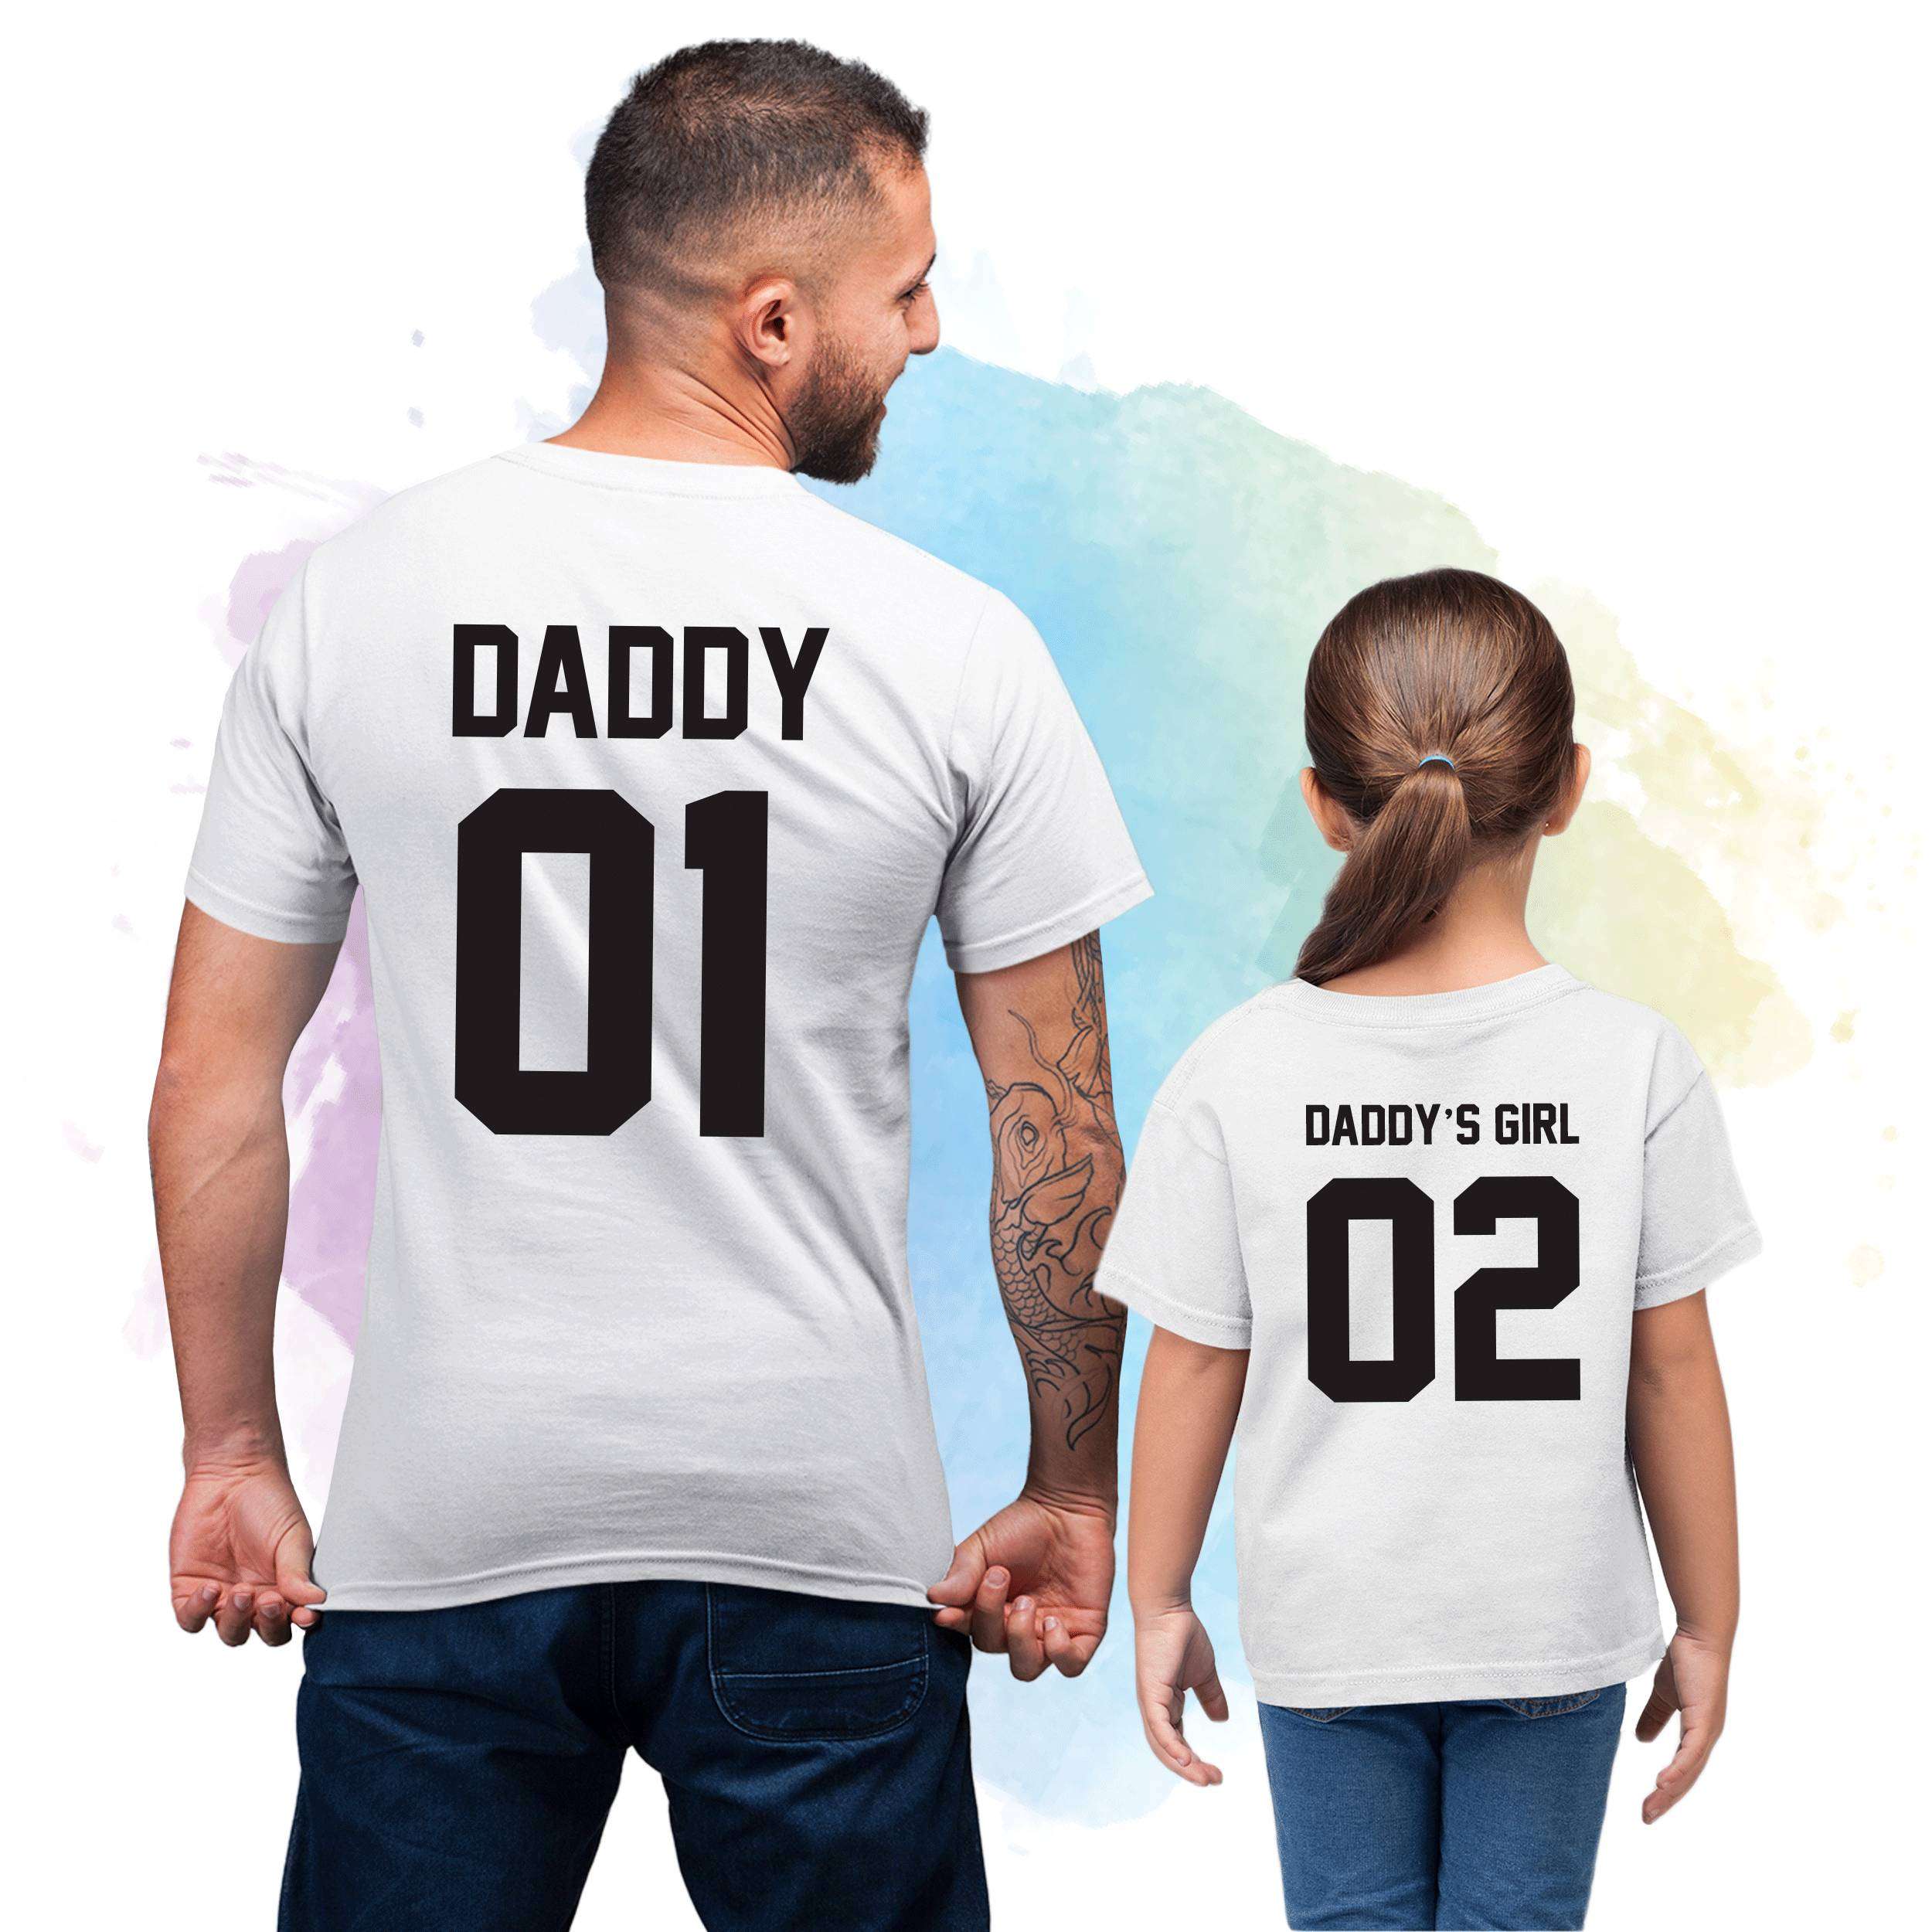 Футболка Daddy's girl. Girl dad 3 футболка. Папа и Дочки games футболки. Футболки папы и Дочки точка ру.